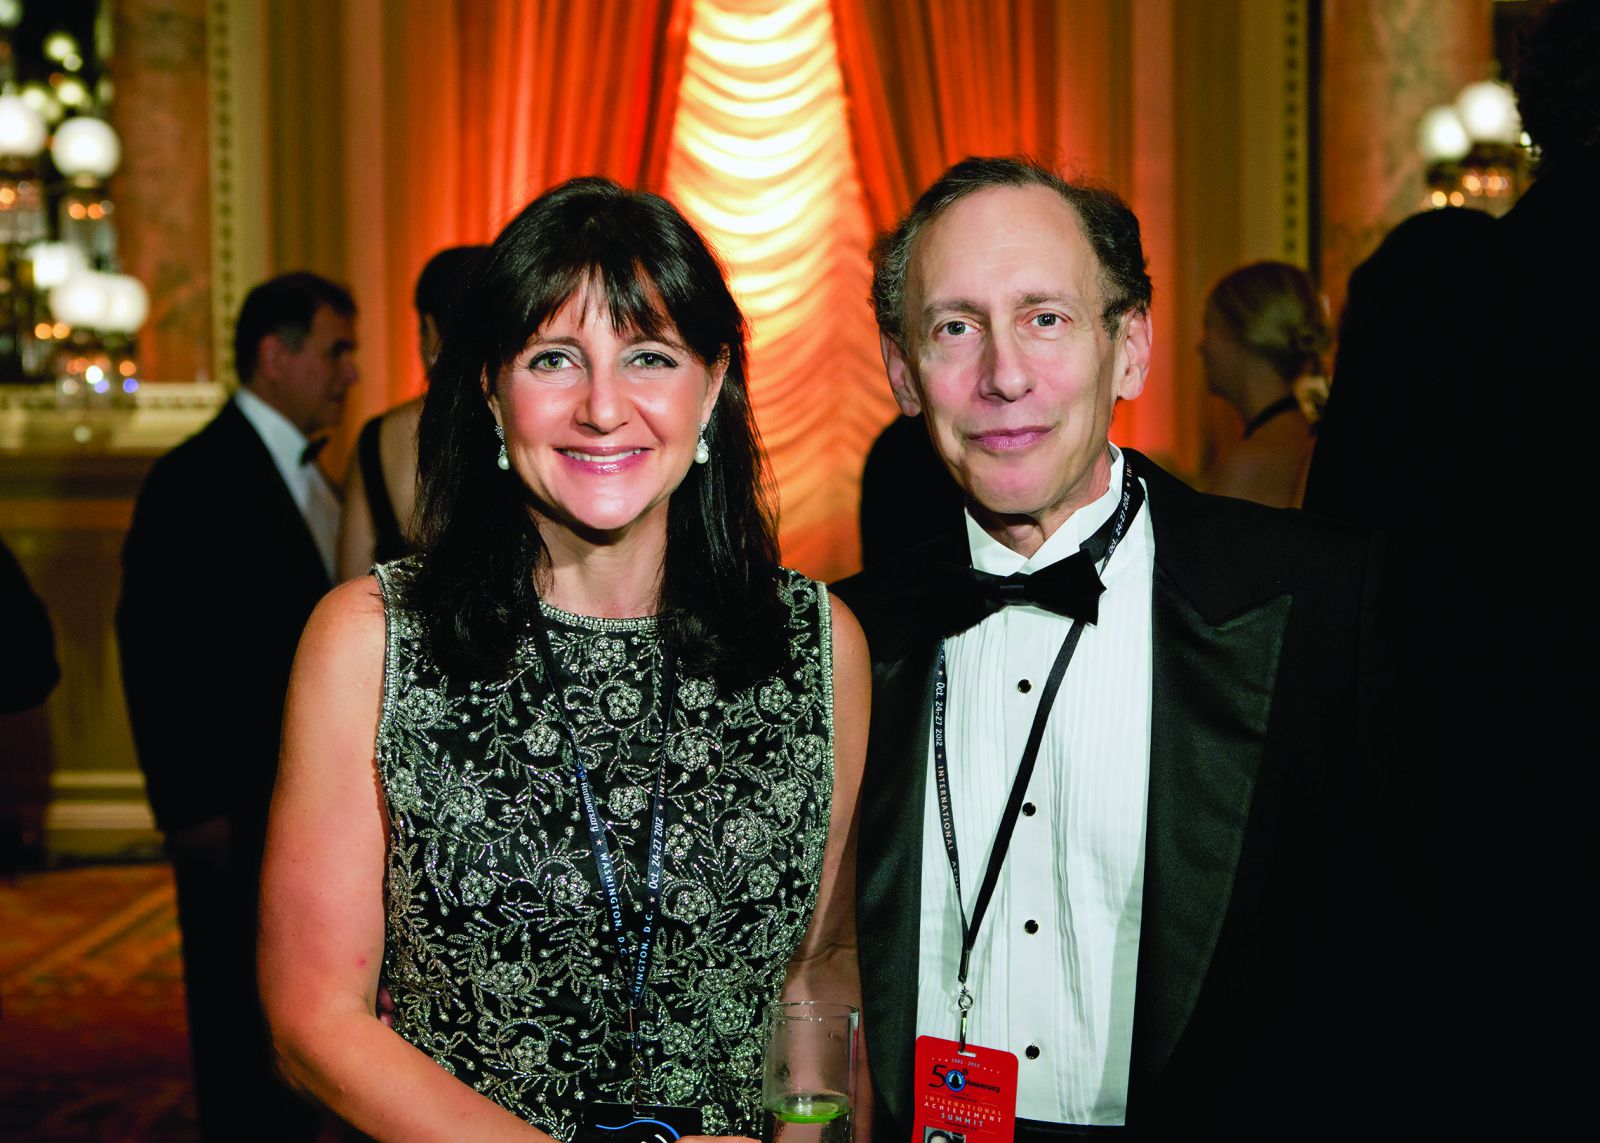 Tiến sĩ Robert S. Langer và vợ ông, Laura, tham dự Hội nghị Thượng đỉnh Thành tựu Quốc tế 2012 tại Washington, DC.